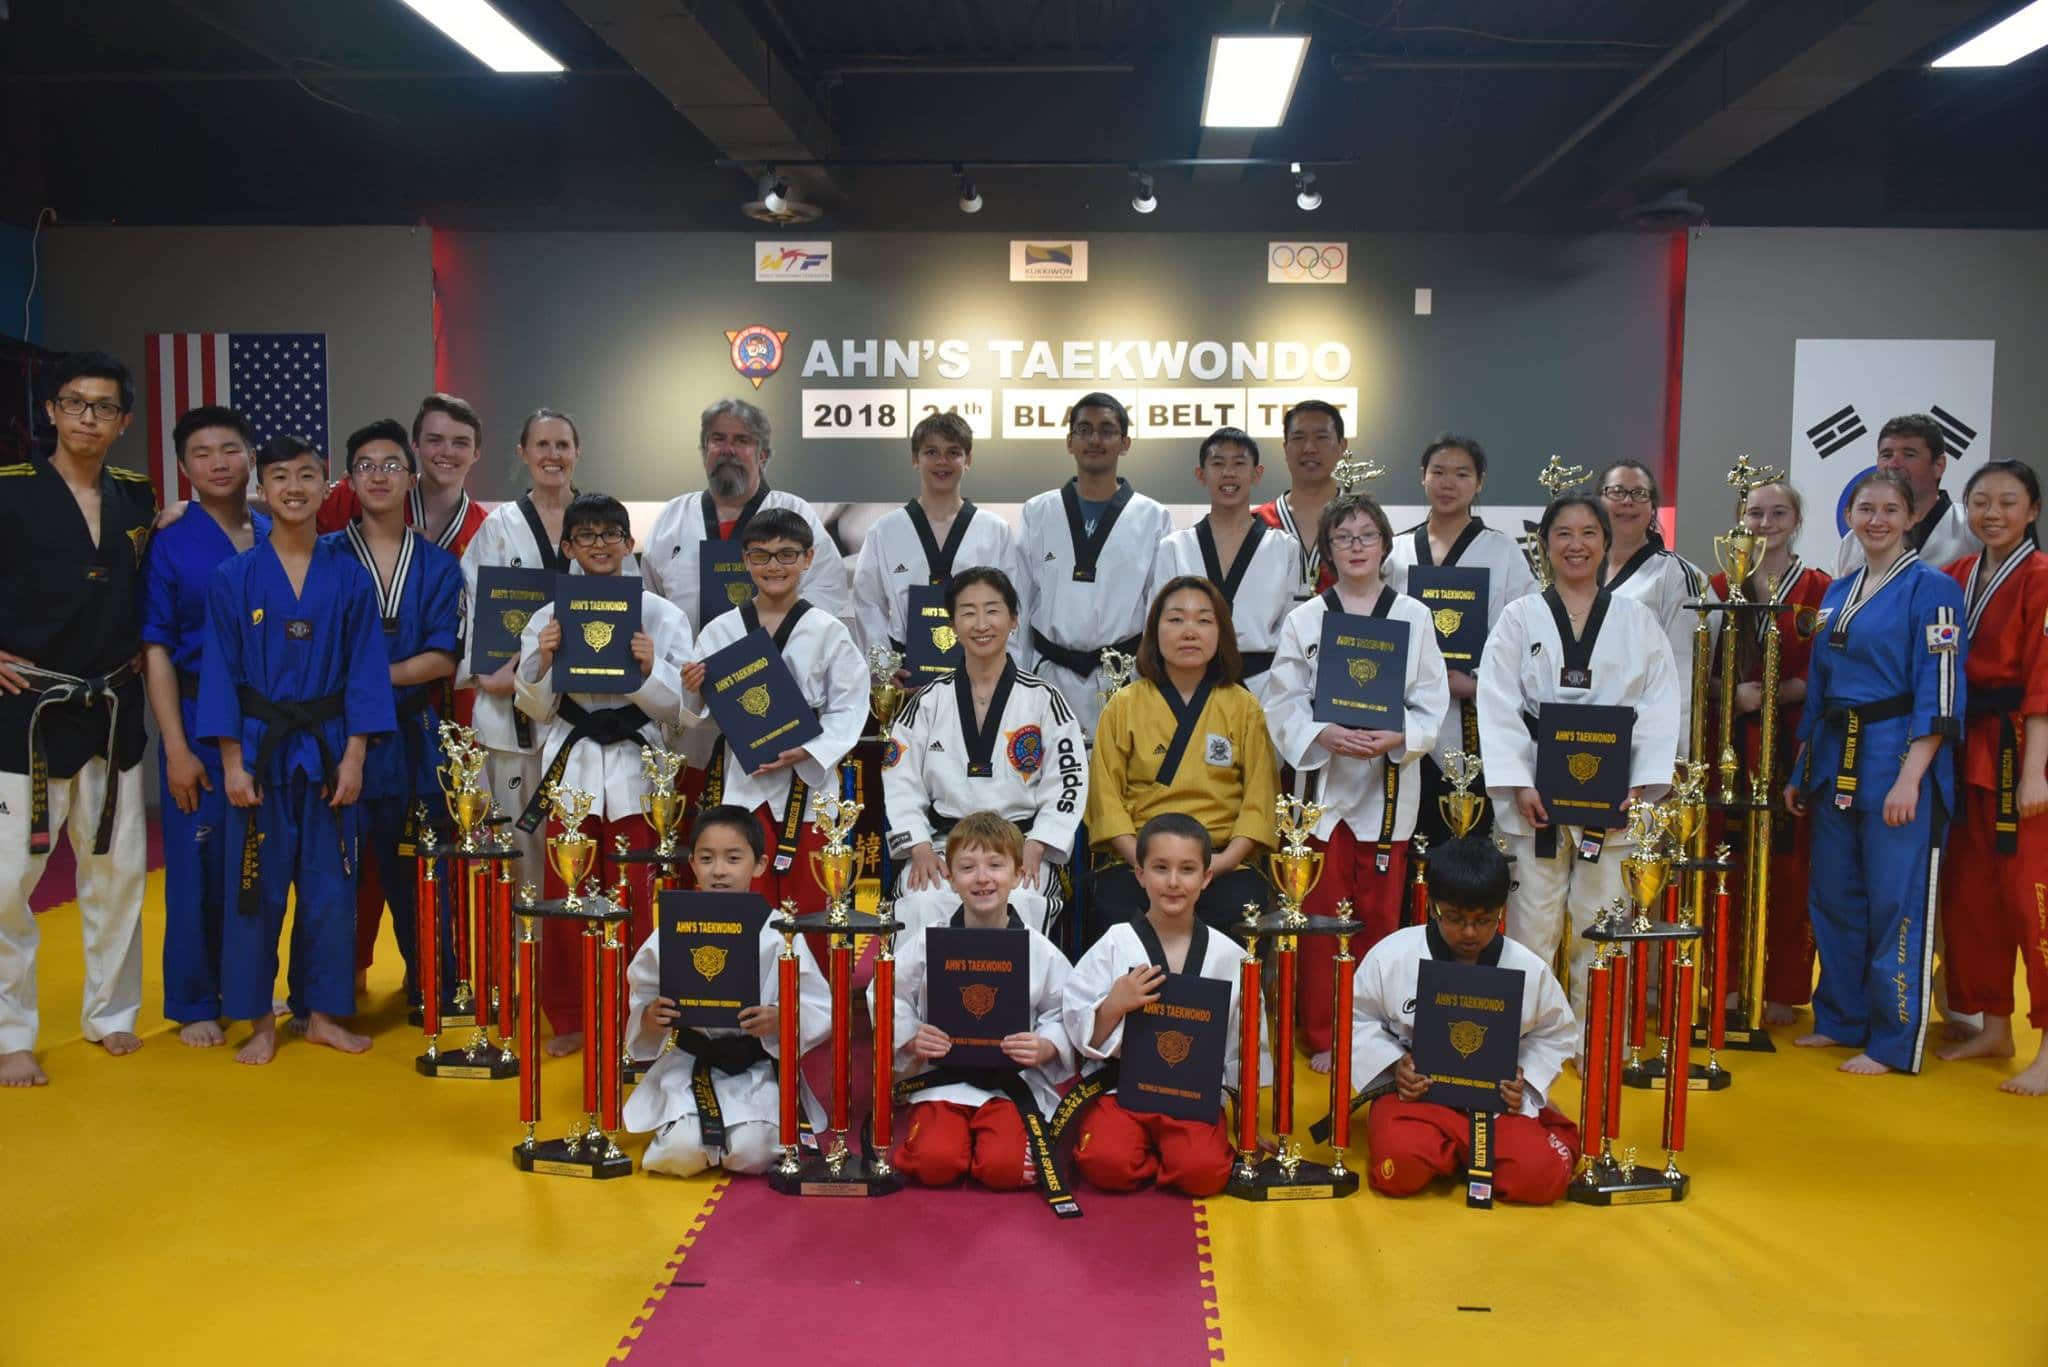 Ahn's Taekwondo Lawrenceville Grand Master Jae Ro Ahn